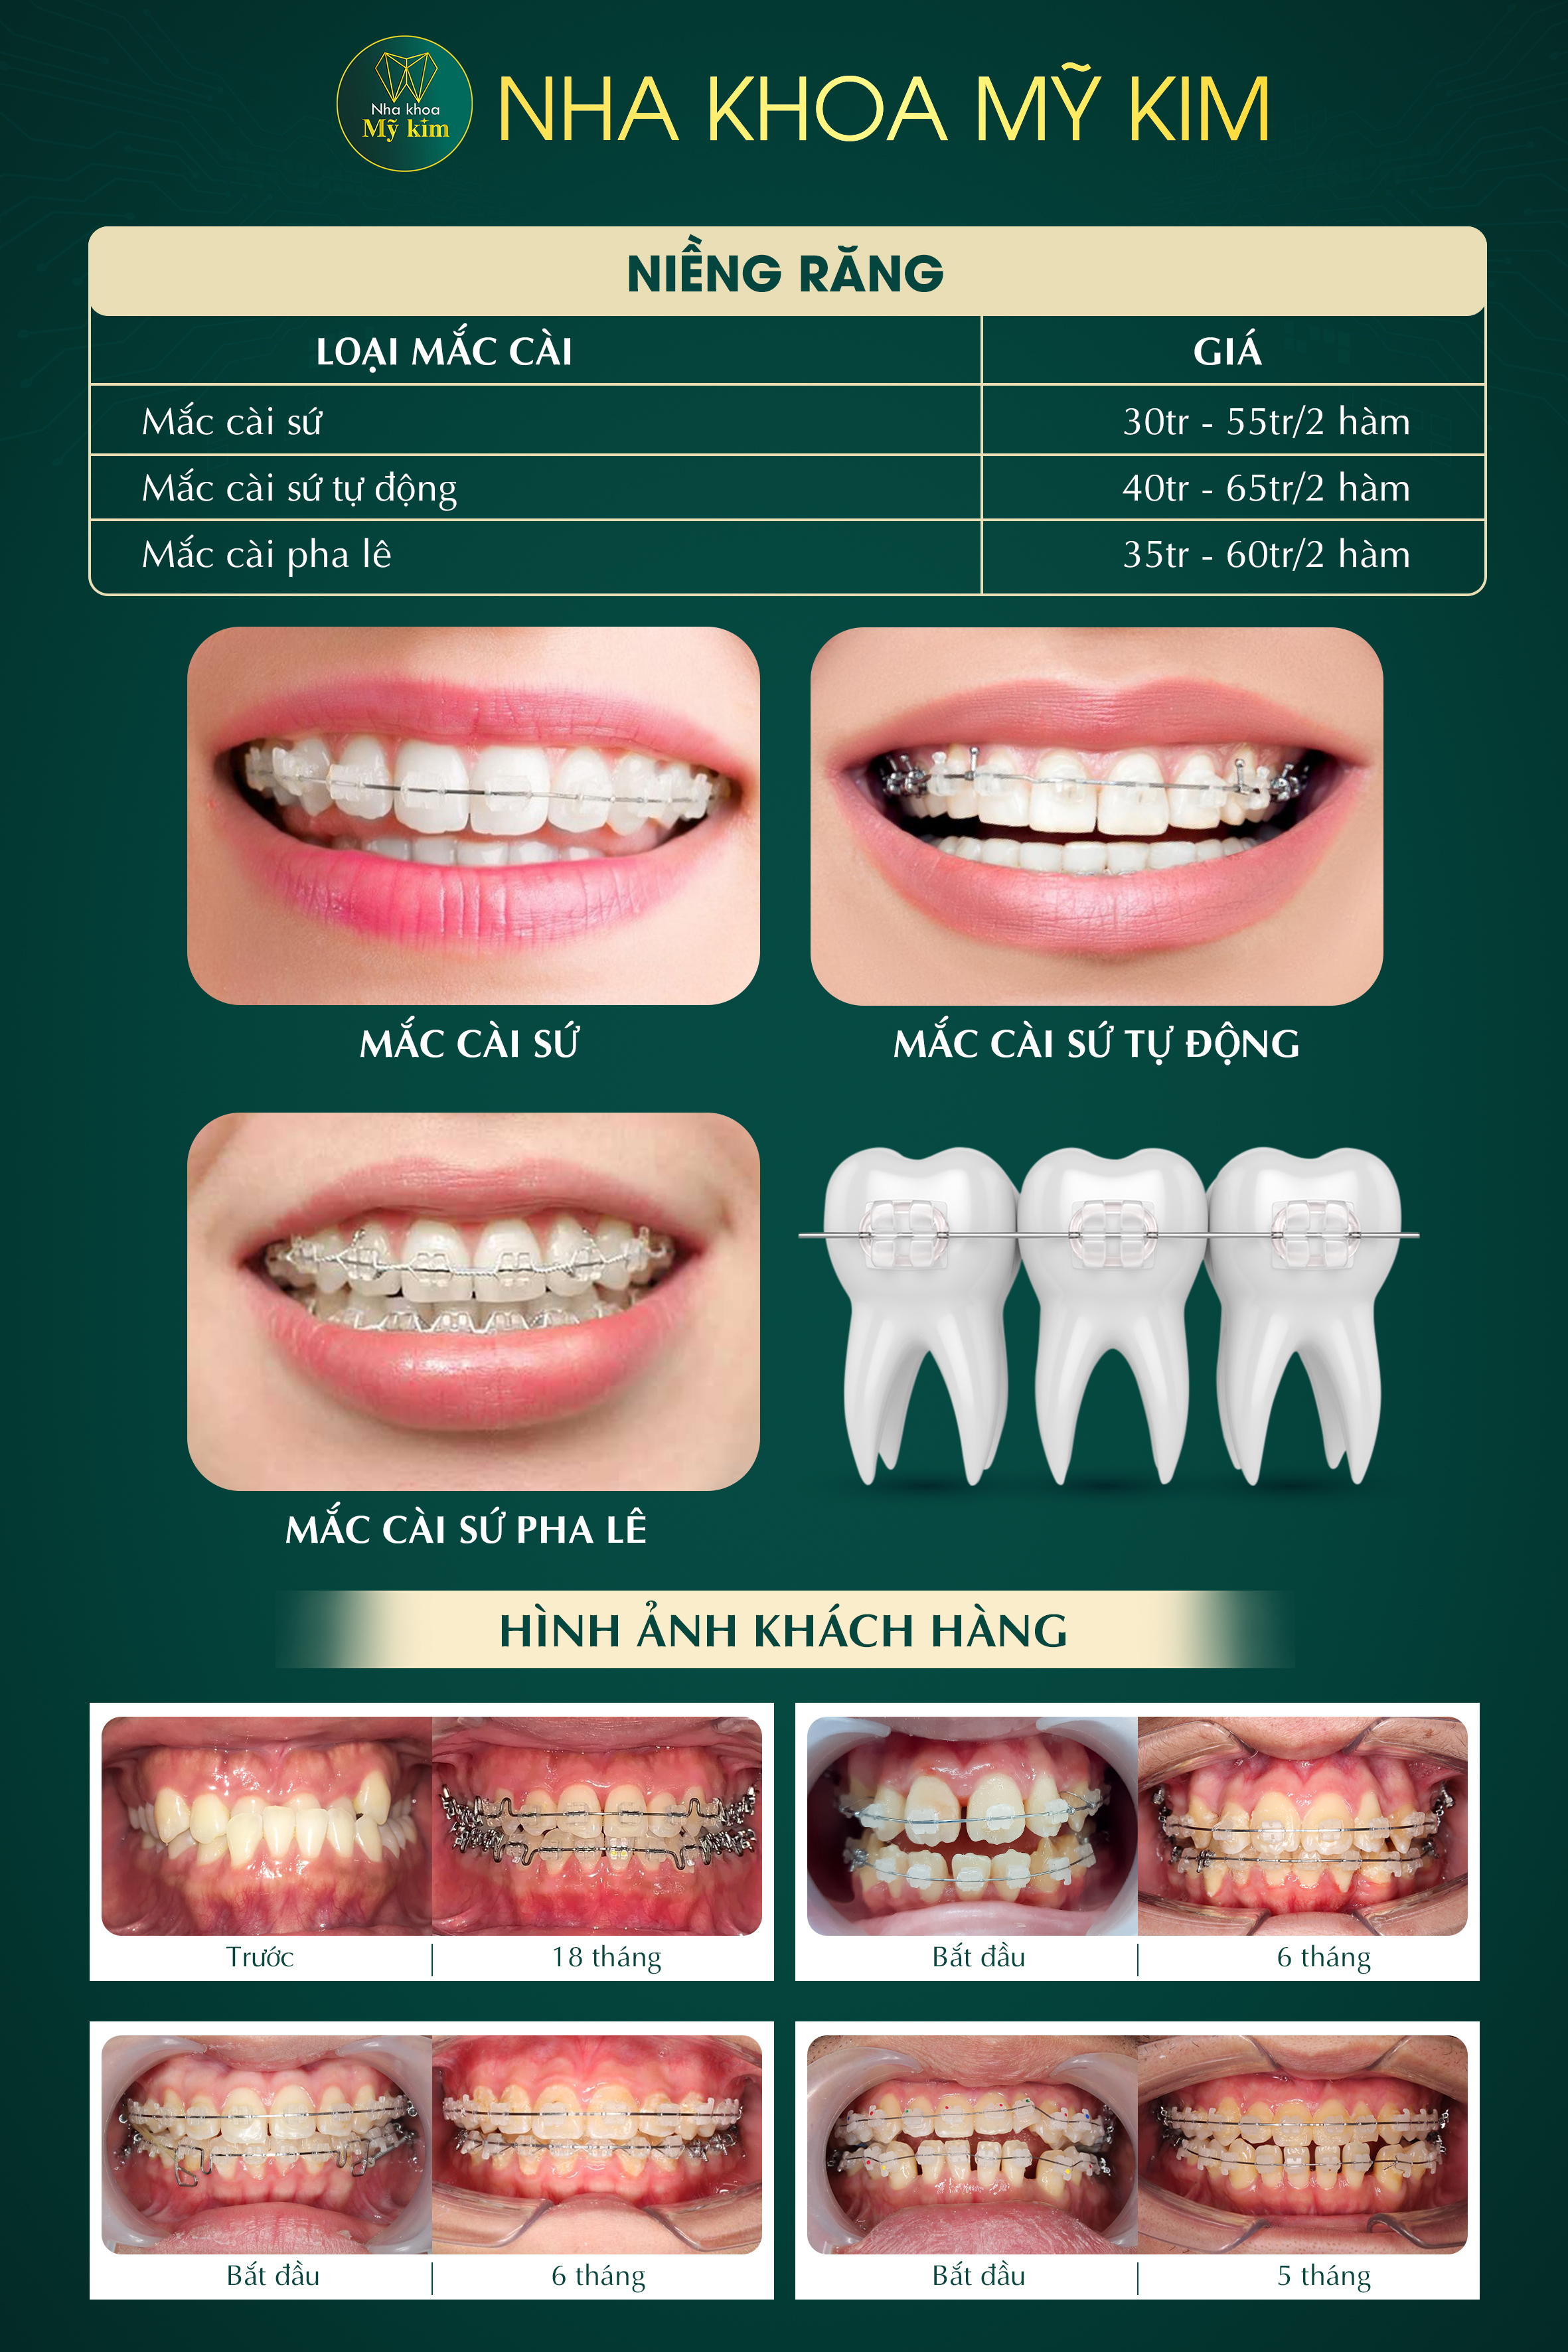 Bảng giá dịch vụ niềng răng thẩm mỹ tại nha khoa mỹ kim 2